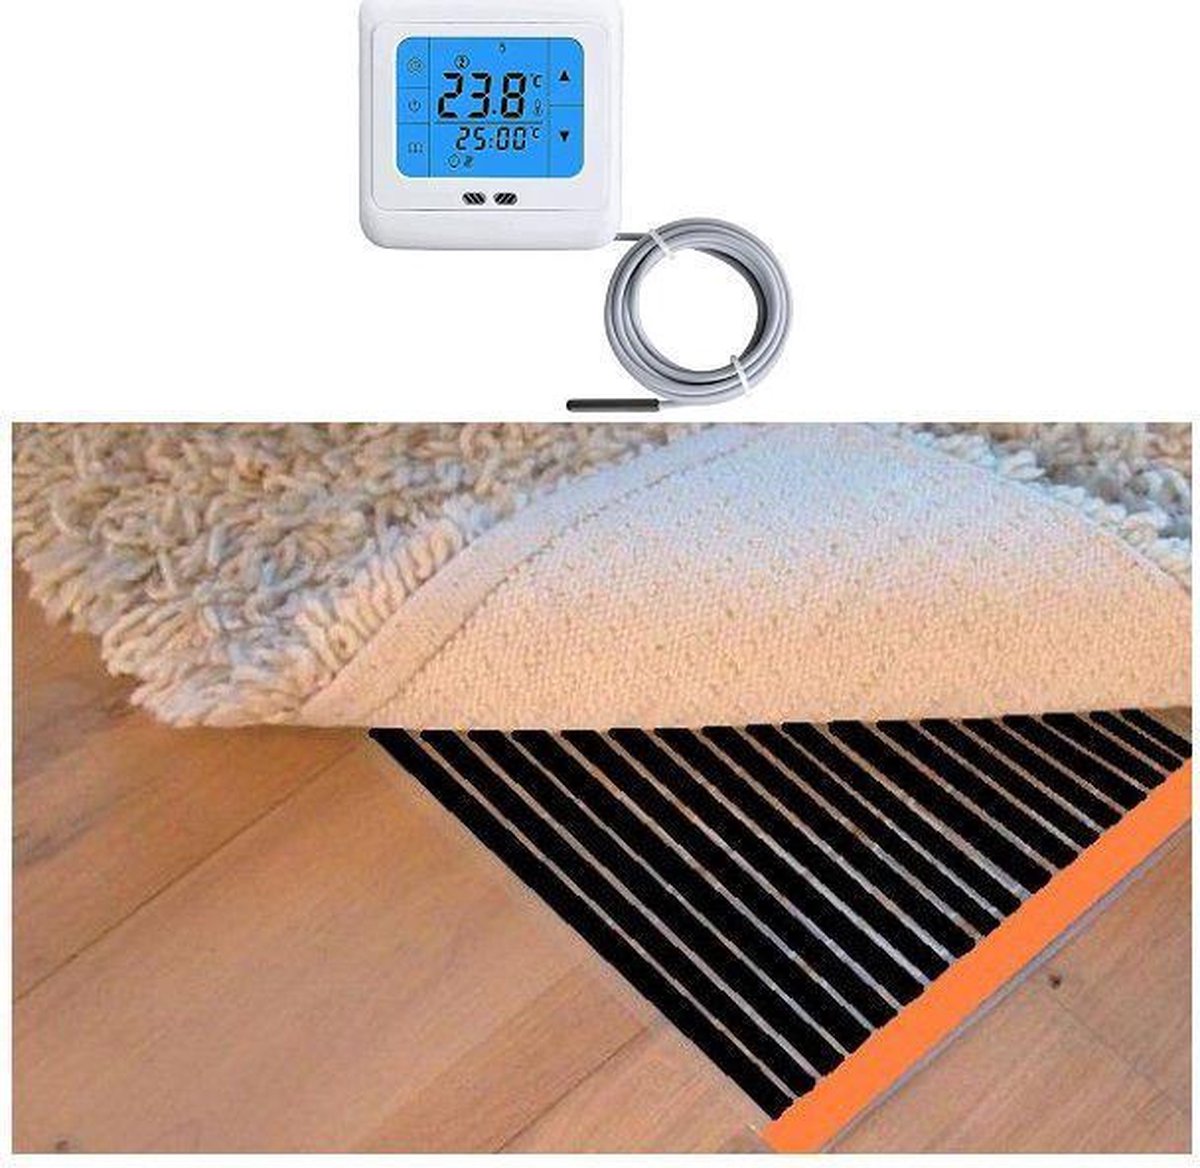 Woonkamer verwarmingsfolie infrarood folie voor vloerbedekking, tapijten vloerkleden elektrisch met TH 89 thermostaat 150 cm x 450 cm 1080 Watt